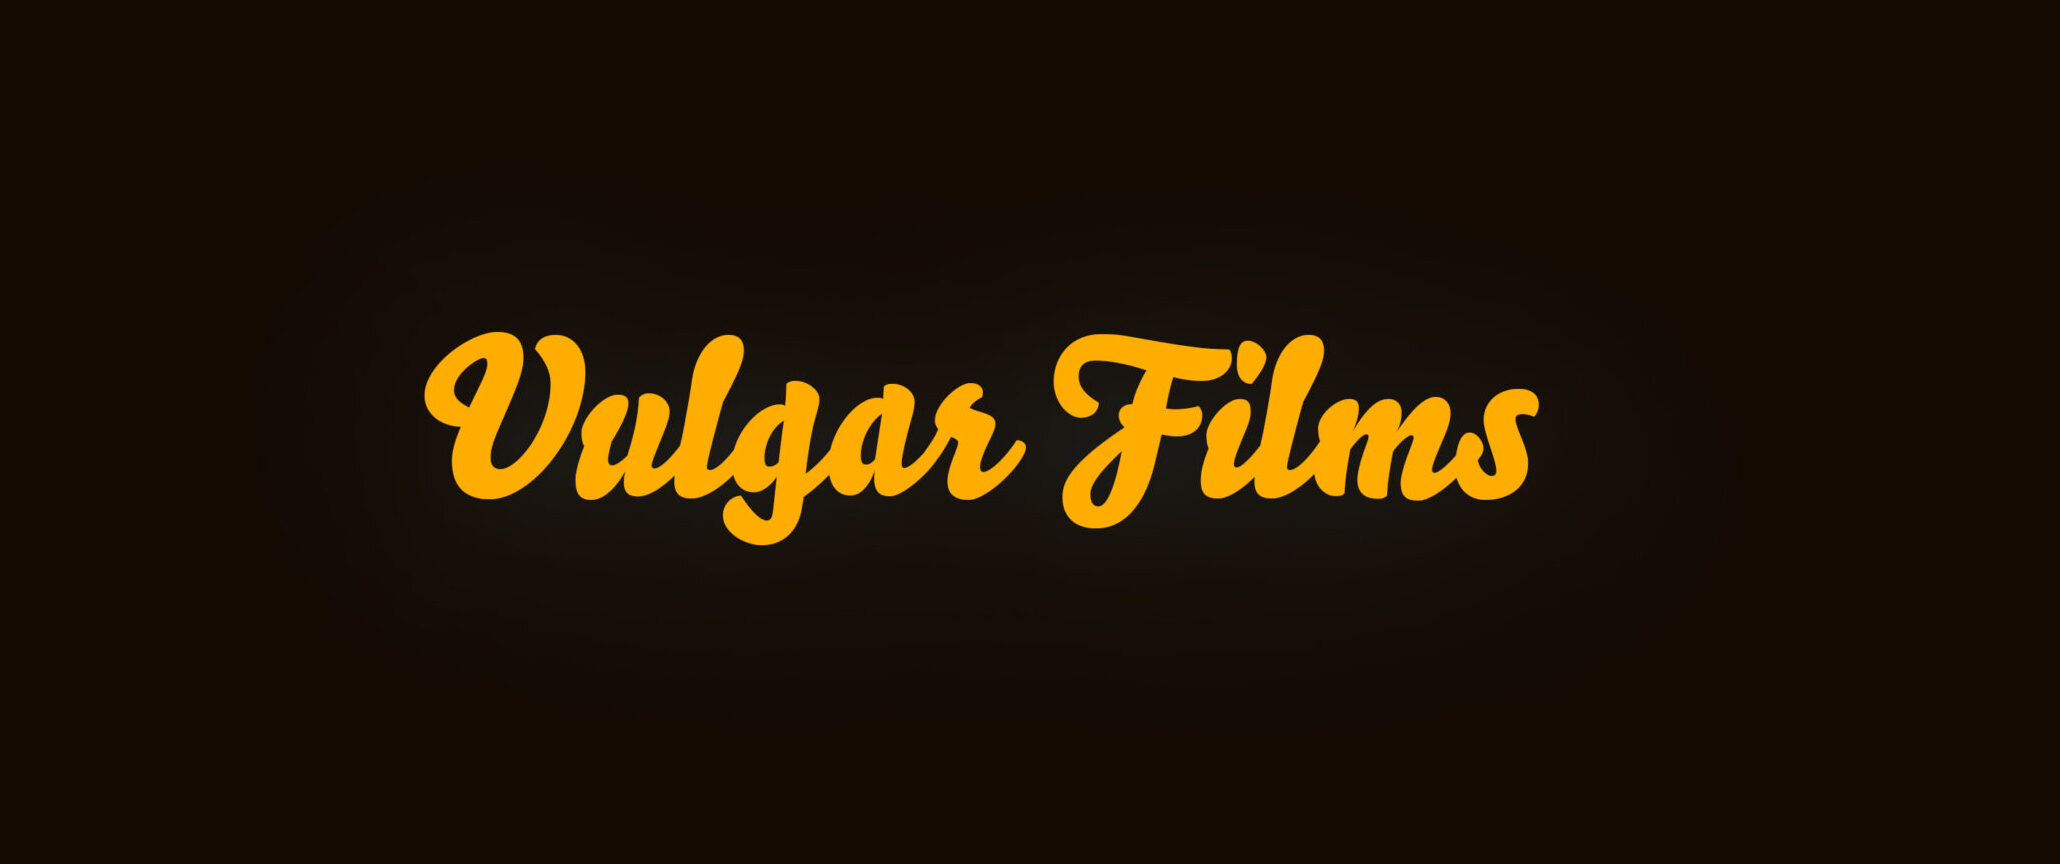 Vulgar Films │ Official Site